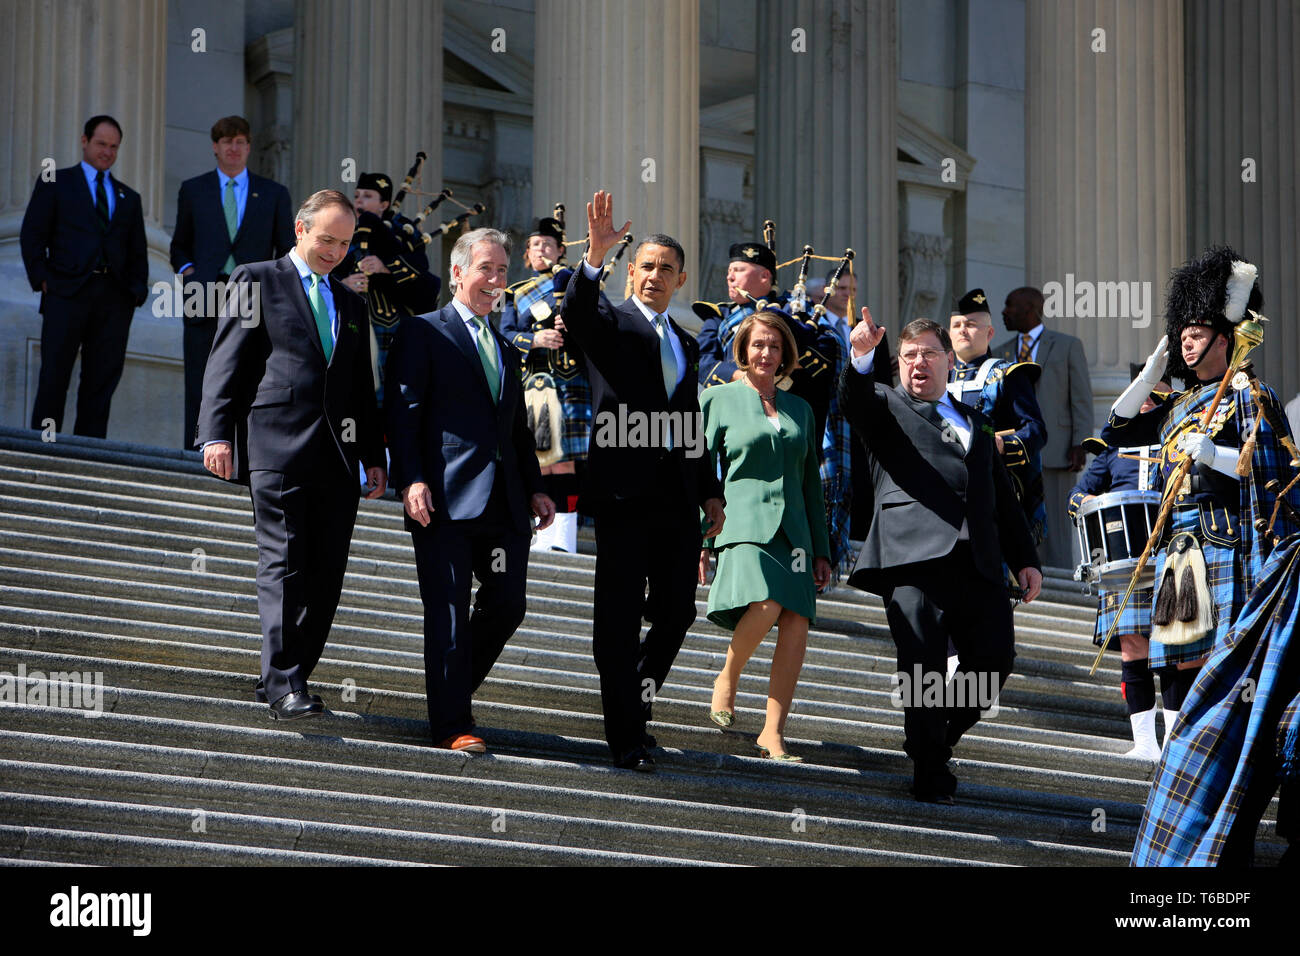 Sprecher Nancy Pelosi und 44. Präsident der Vereinigten Staaten, Barack Obama, melden sie an der Treppe des US Capitol am St. Patricks Day nach der Befestigung des Obamacare Rechnung. Stockfoto